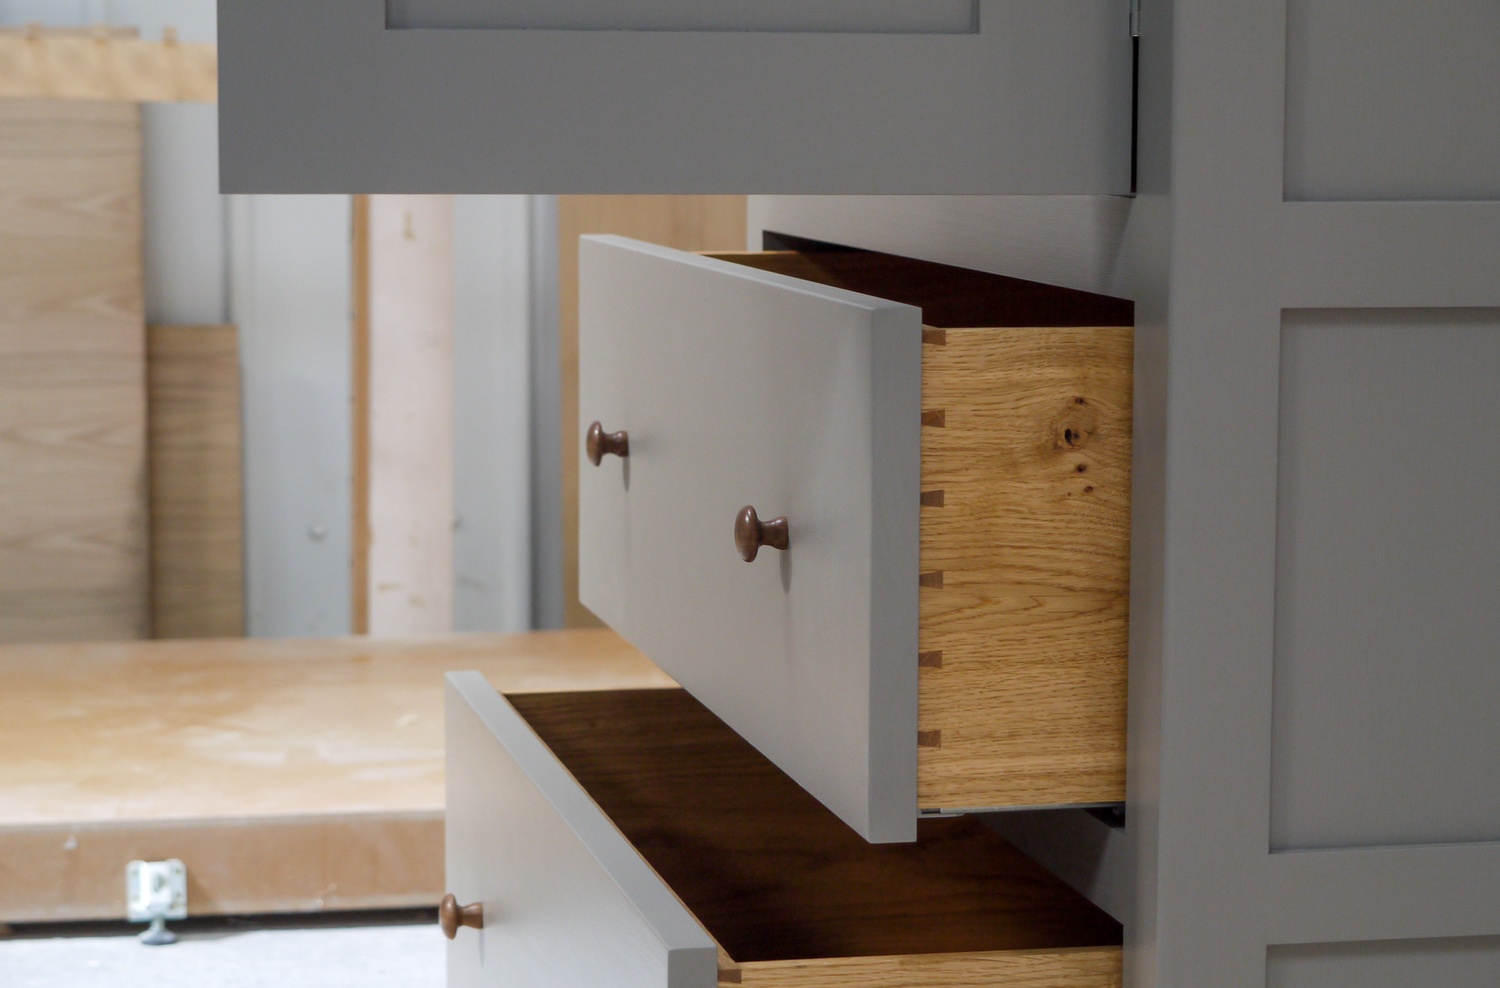 freestanding larder cupboard, oak spice racks, oak dovetailed draws, shaker style